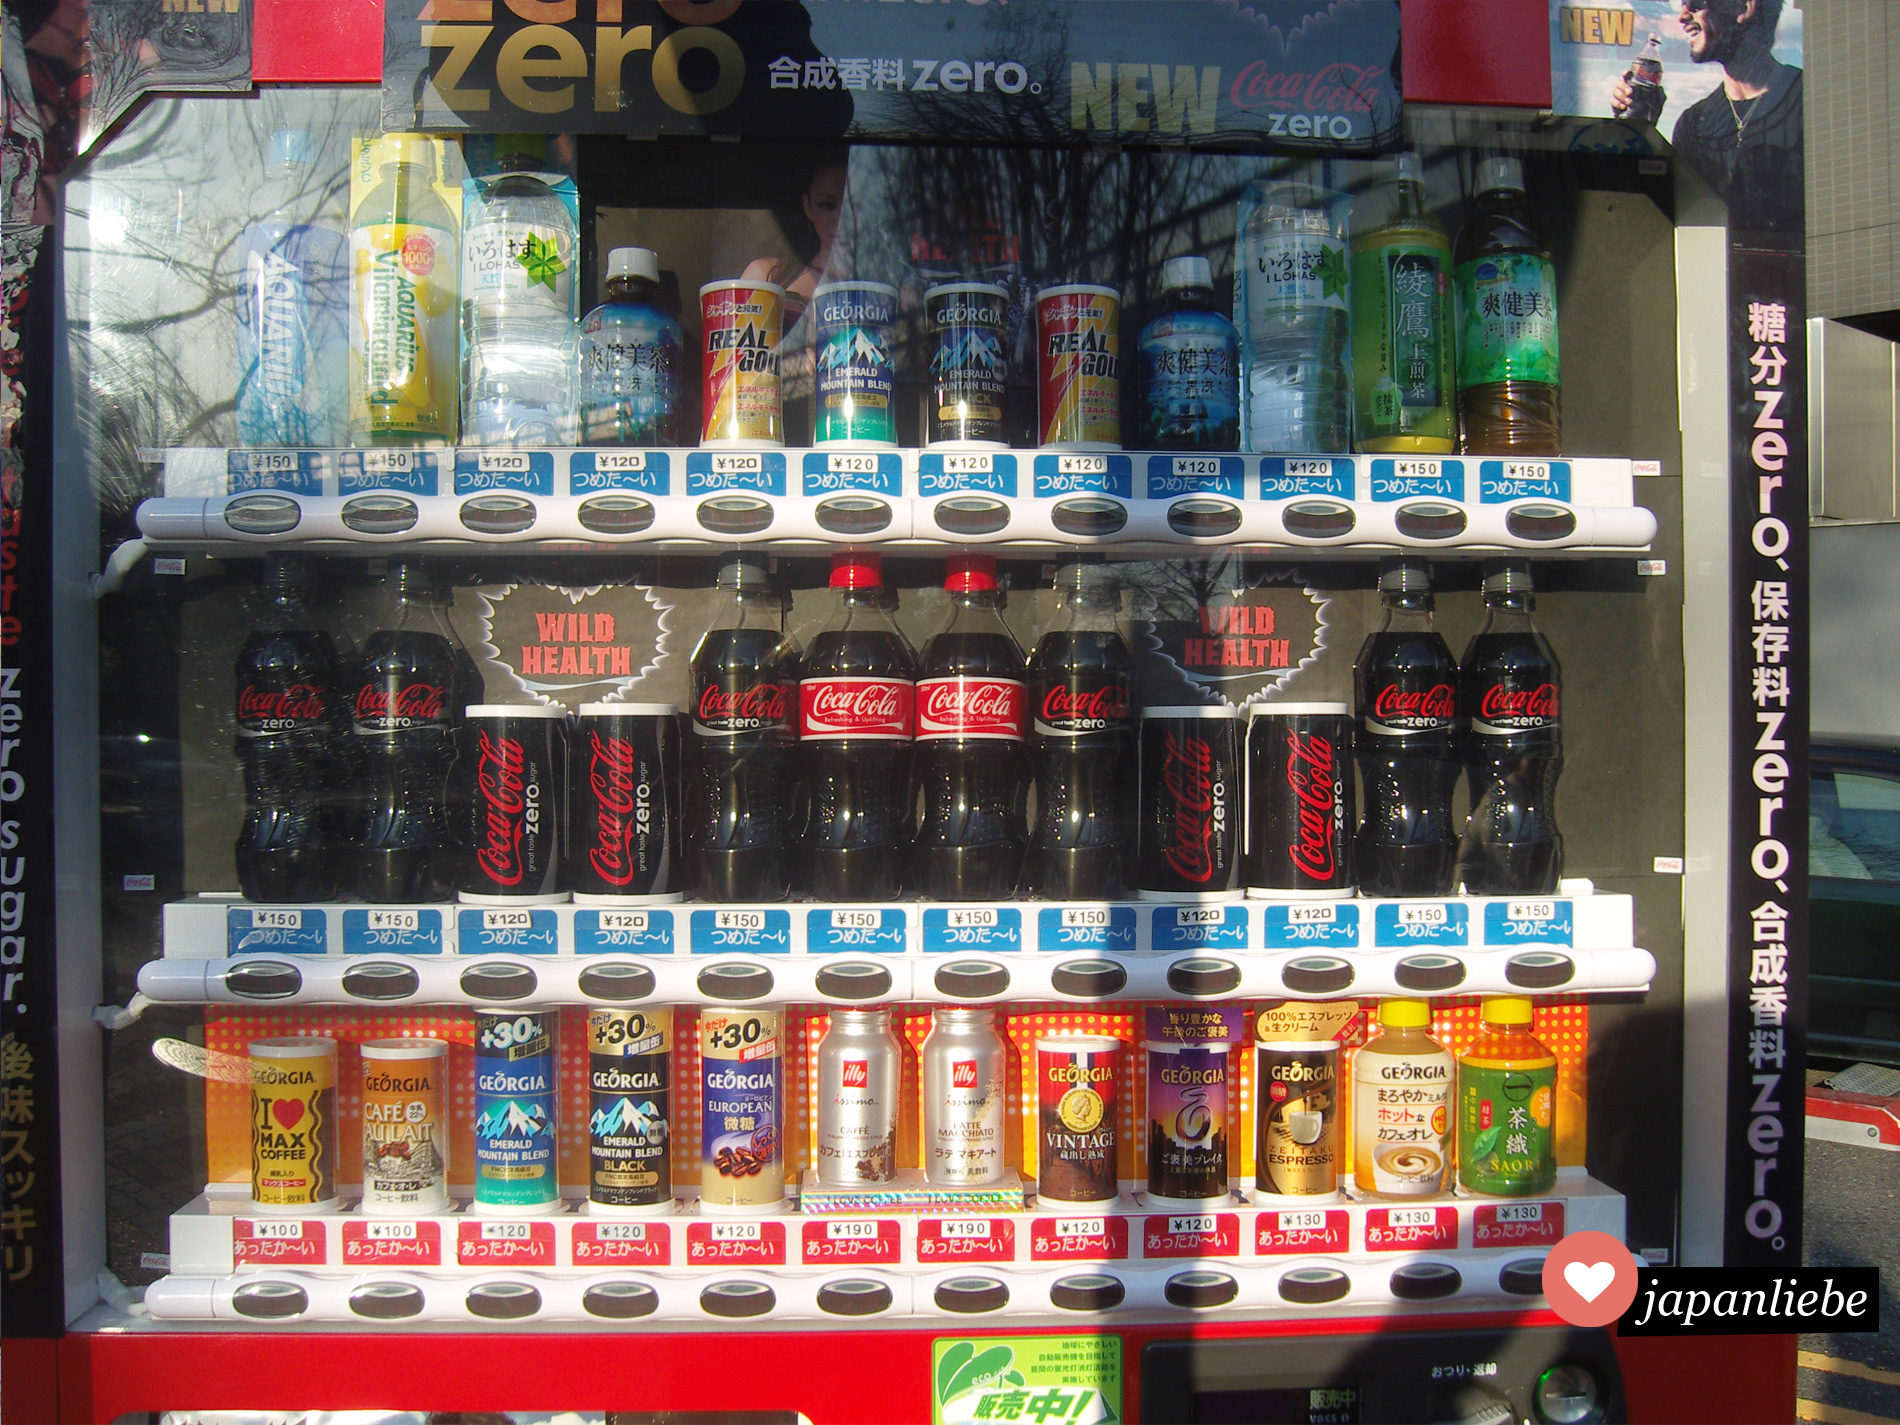 Ein typischer japanischer Getränkeautomat mit einer übergroßen Auswahl an Coca Cola.